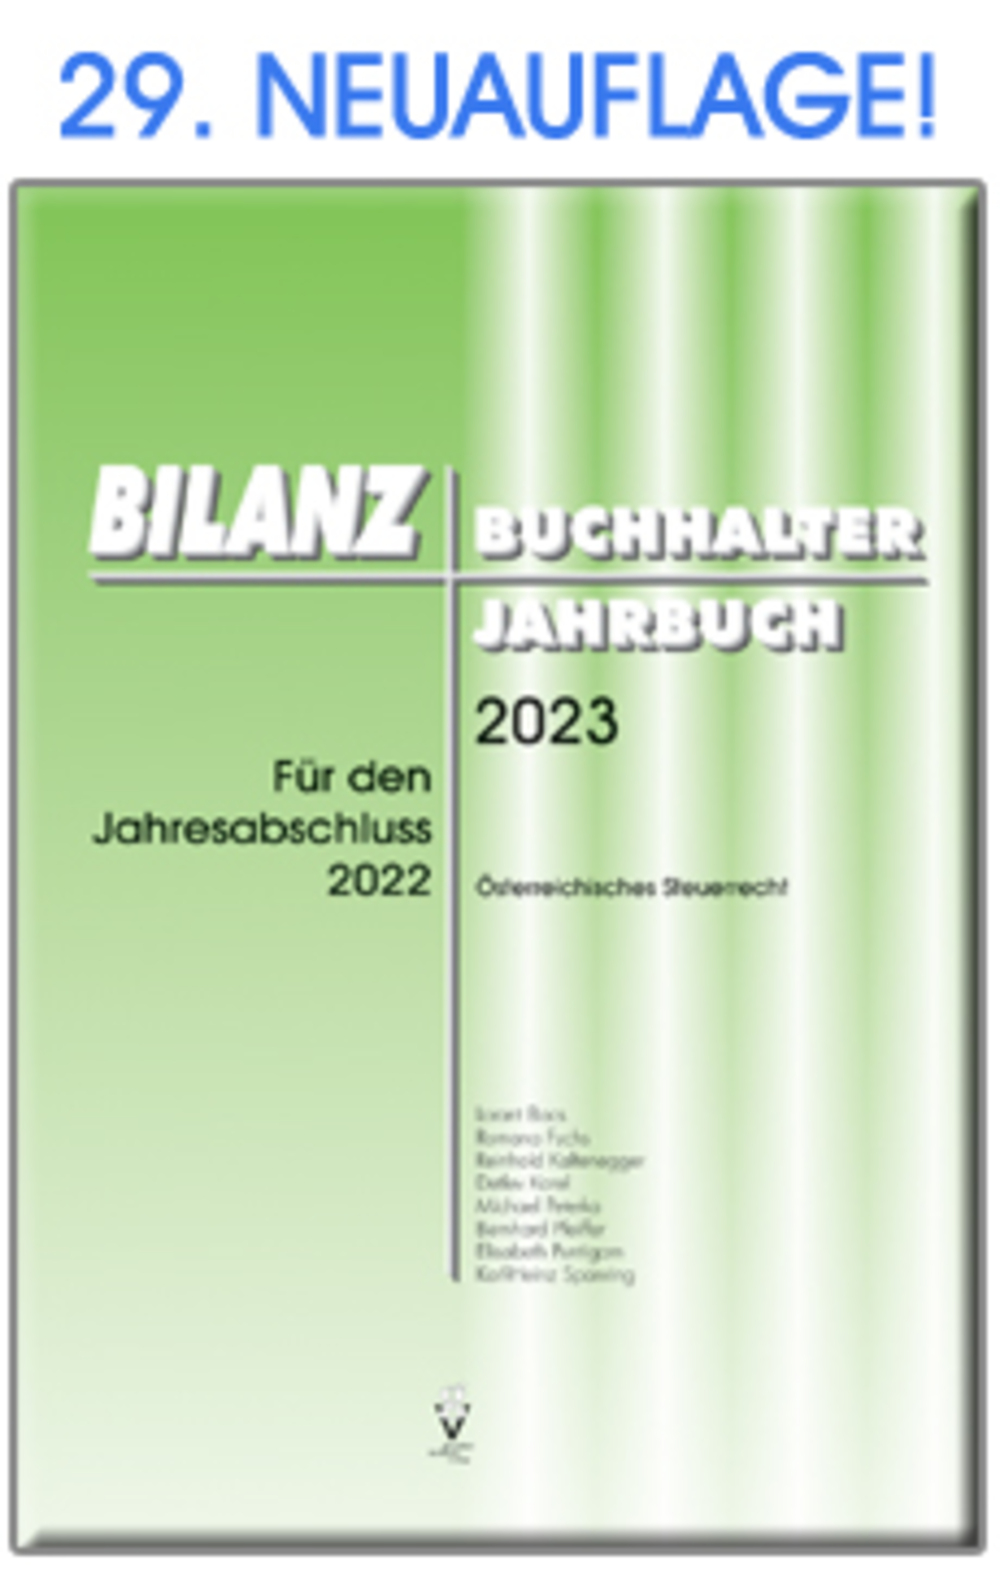 BILANZBUCHHALTER JAHRBUCH 2023 Für den Jahresabschluss 2022